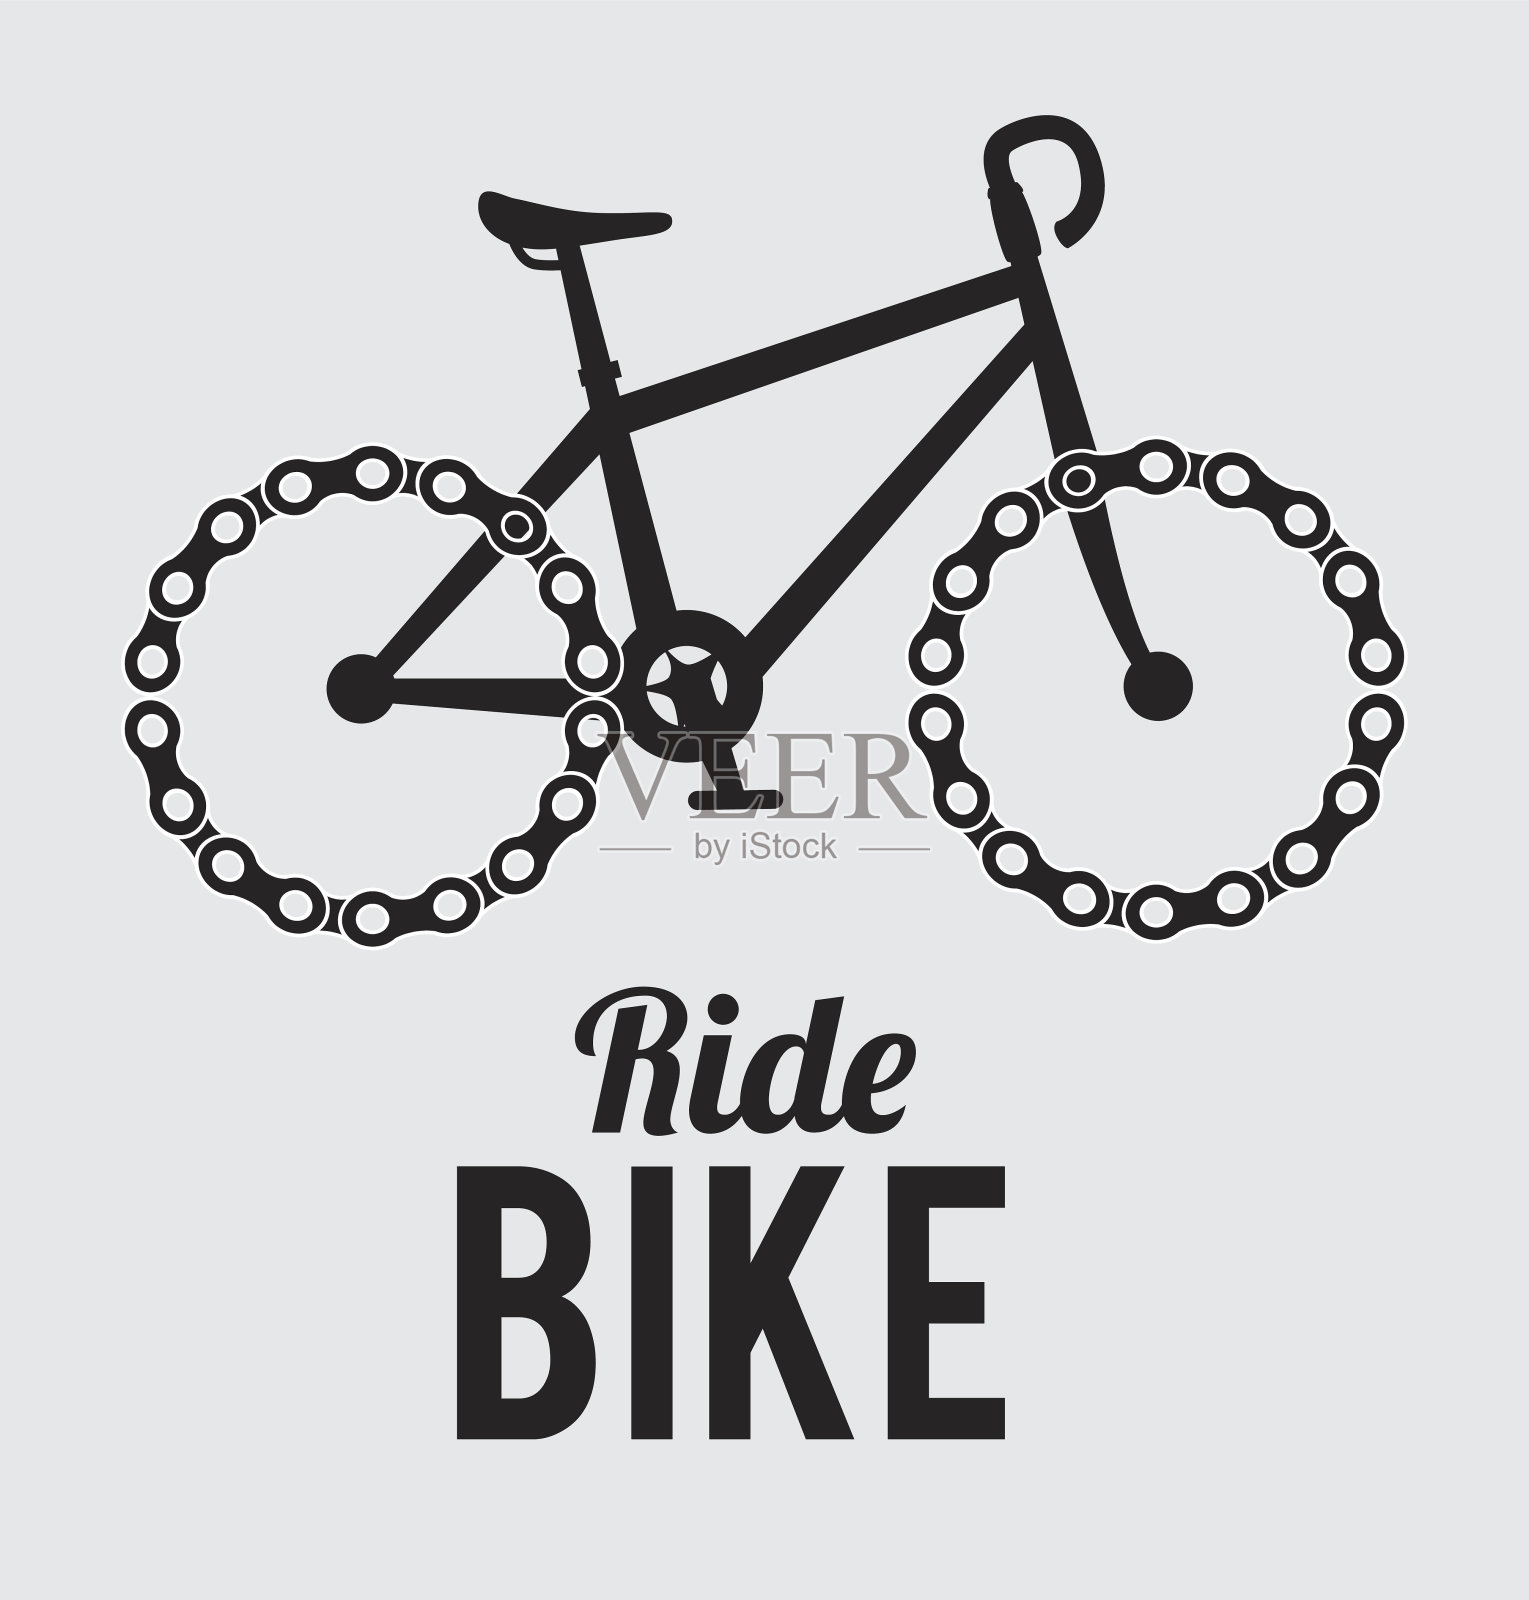 自行车设计设计元素图片